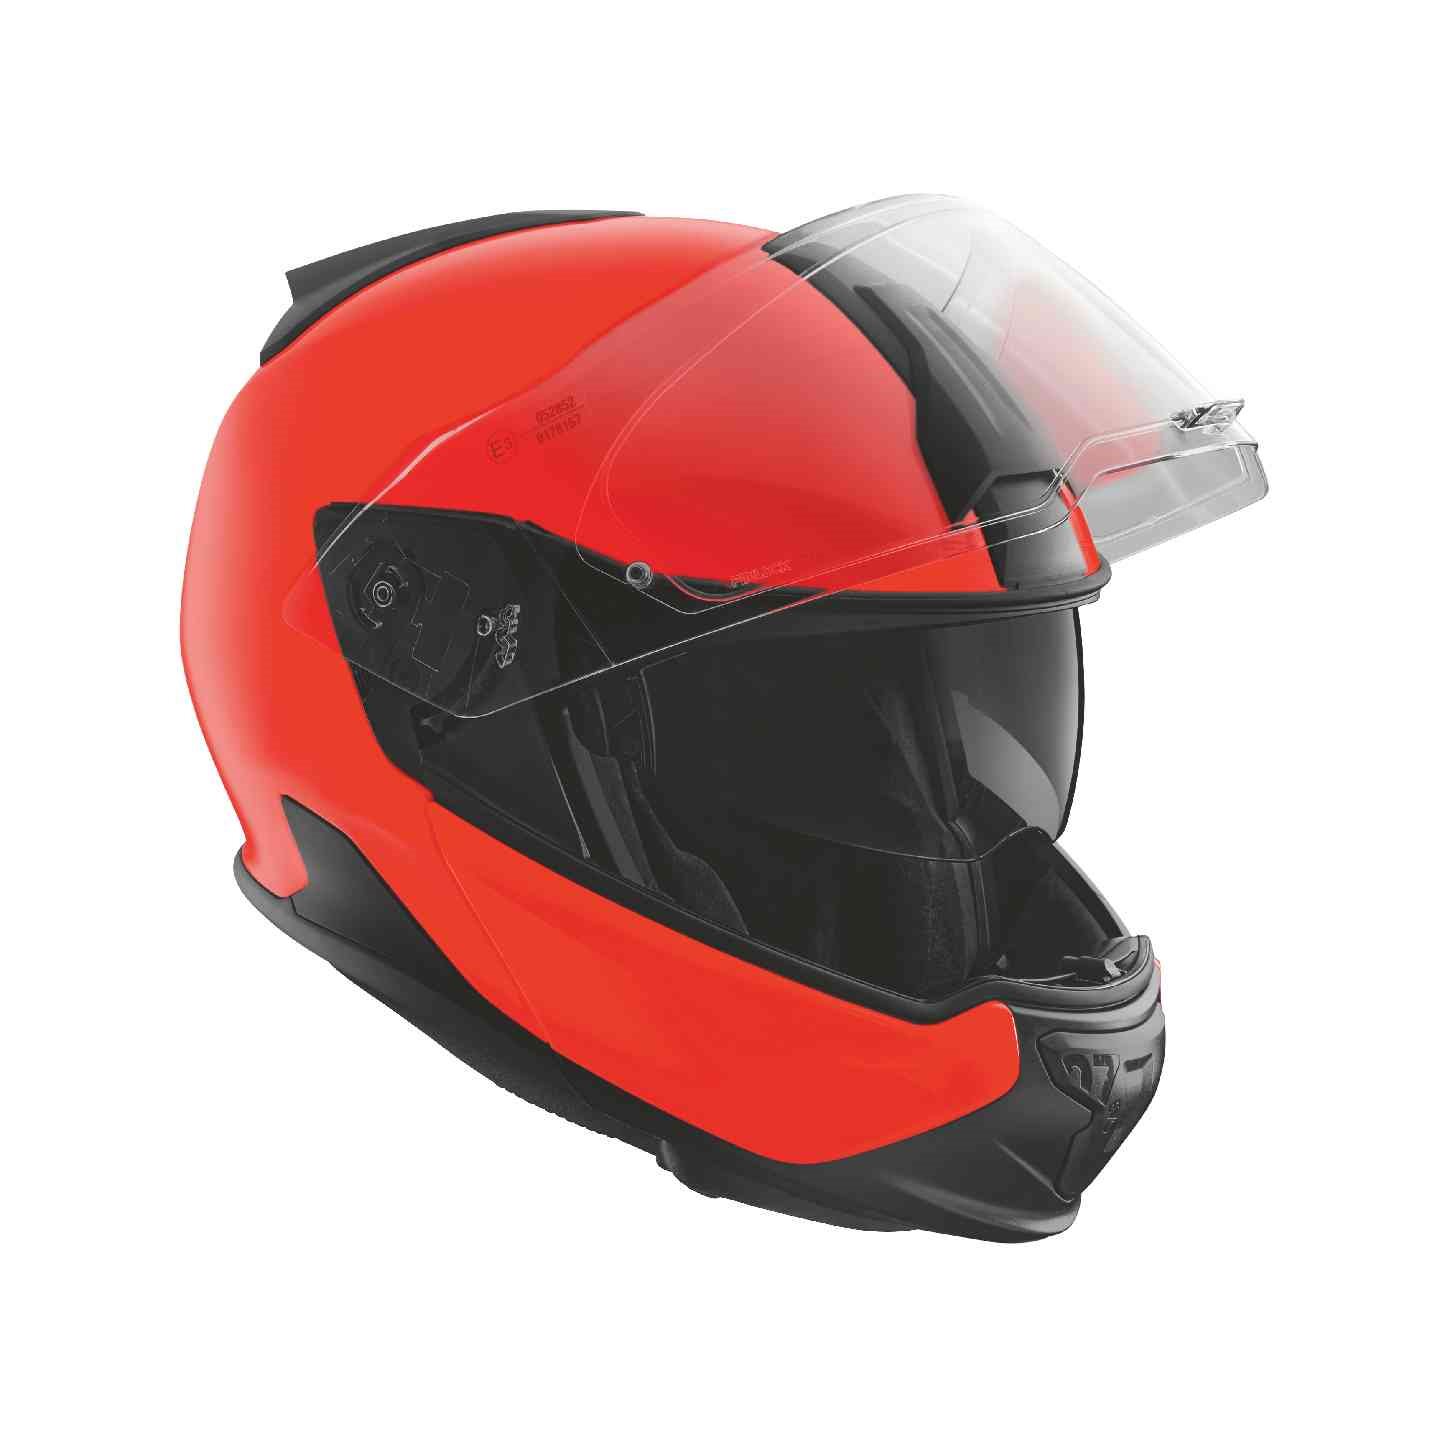 BMW Motorrad Helm System 7 EVO Carbon Neon statt 760,00 EUR jetzt nur  532,00 EUR - 1000PS Shop - Helme